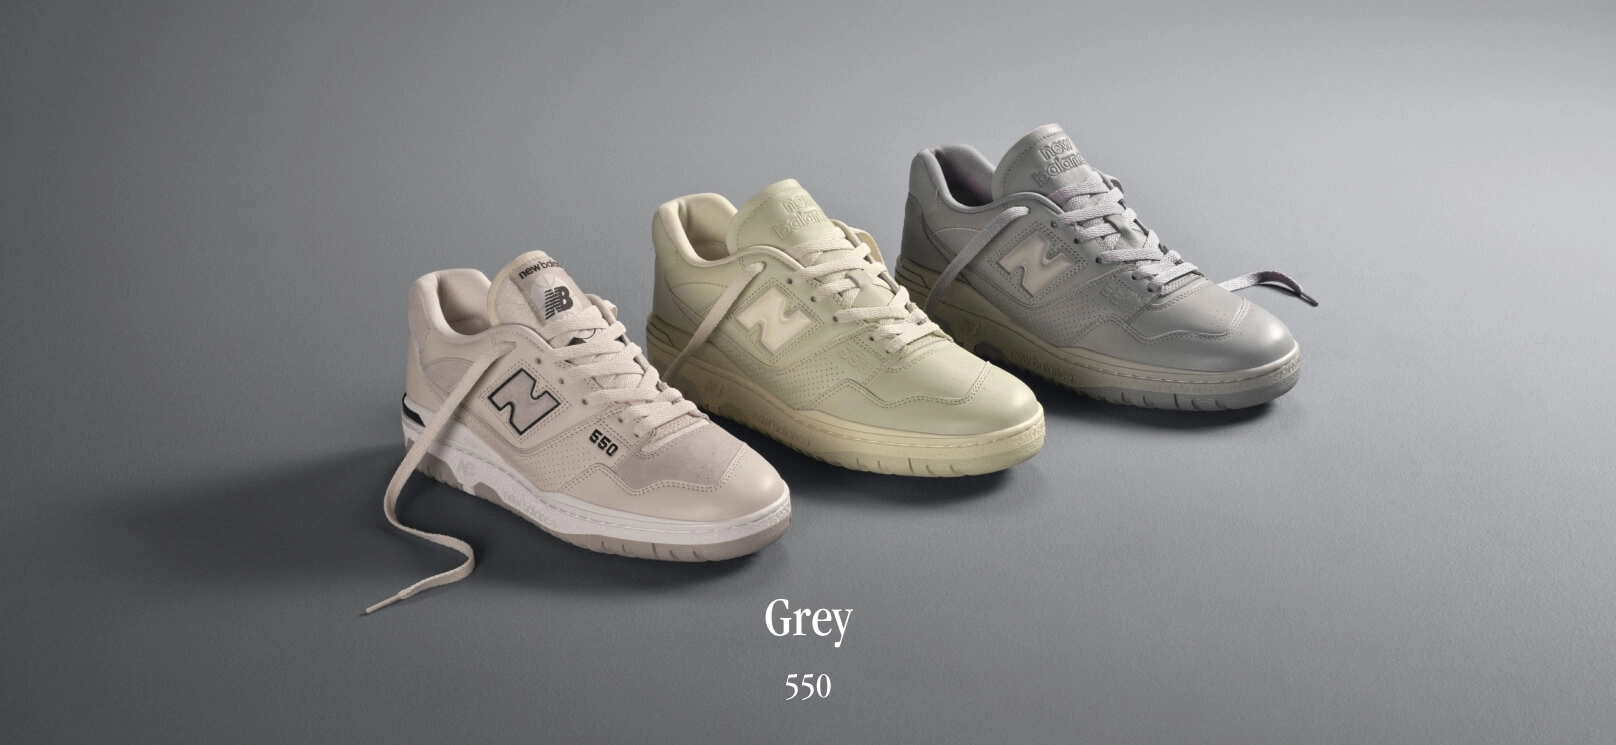 Grey 550